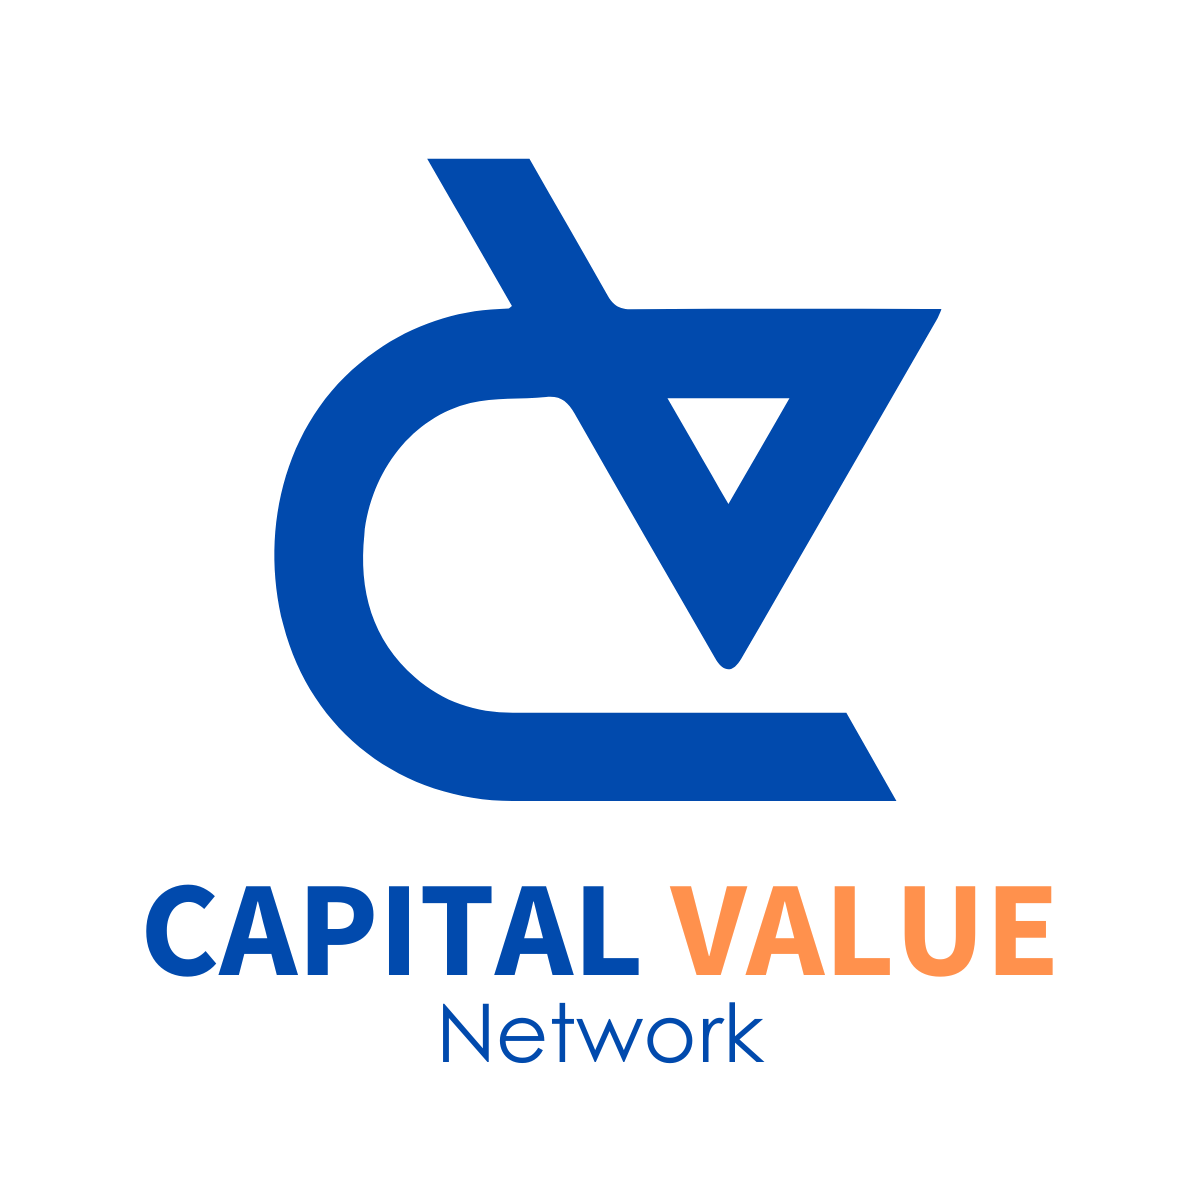 CAPITAL VALUE logo